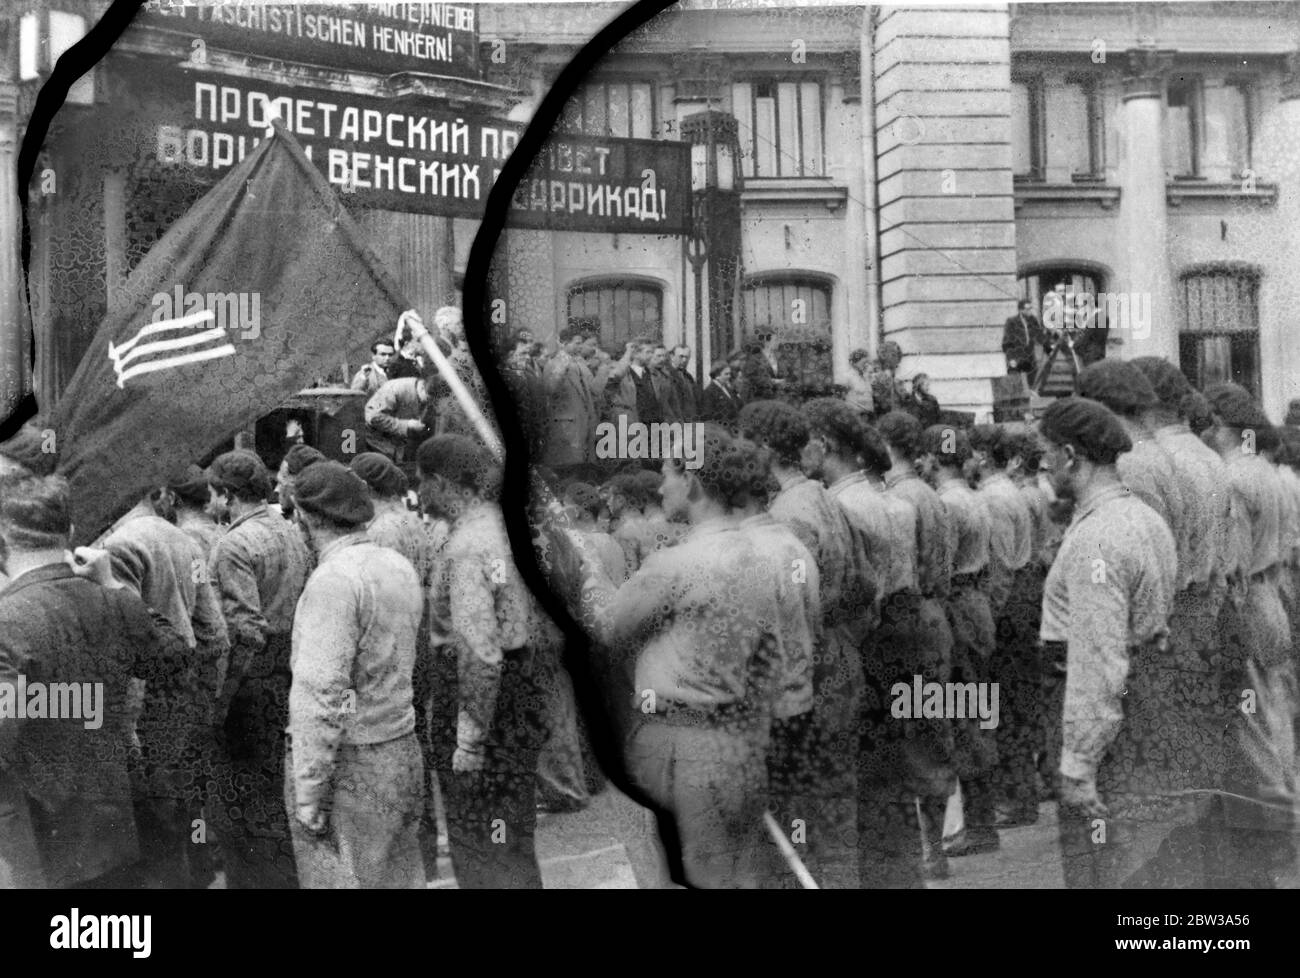 Les socialistes autrichiens ont fait la fuite à Moscou après avoir fui leur patrie . Tout Moscou s'est avéré accueillir plusieurs centaines de membres de l' organisation socialiste autrichienne Schutzbund , qui sont exilés de leur pays après avoir combattu contre les forces gouvernementales lors de la récente guerre civile en Autriche . Les réfugiés avaient cherché refuge en Tchécoslovaquie avant d'aller en Russie . Photos des membres du Schutzbund en uniforme à l'arrivée à Moscou . 30 avril 1934 Banque D'Images